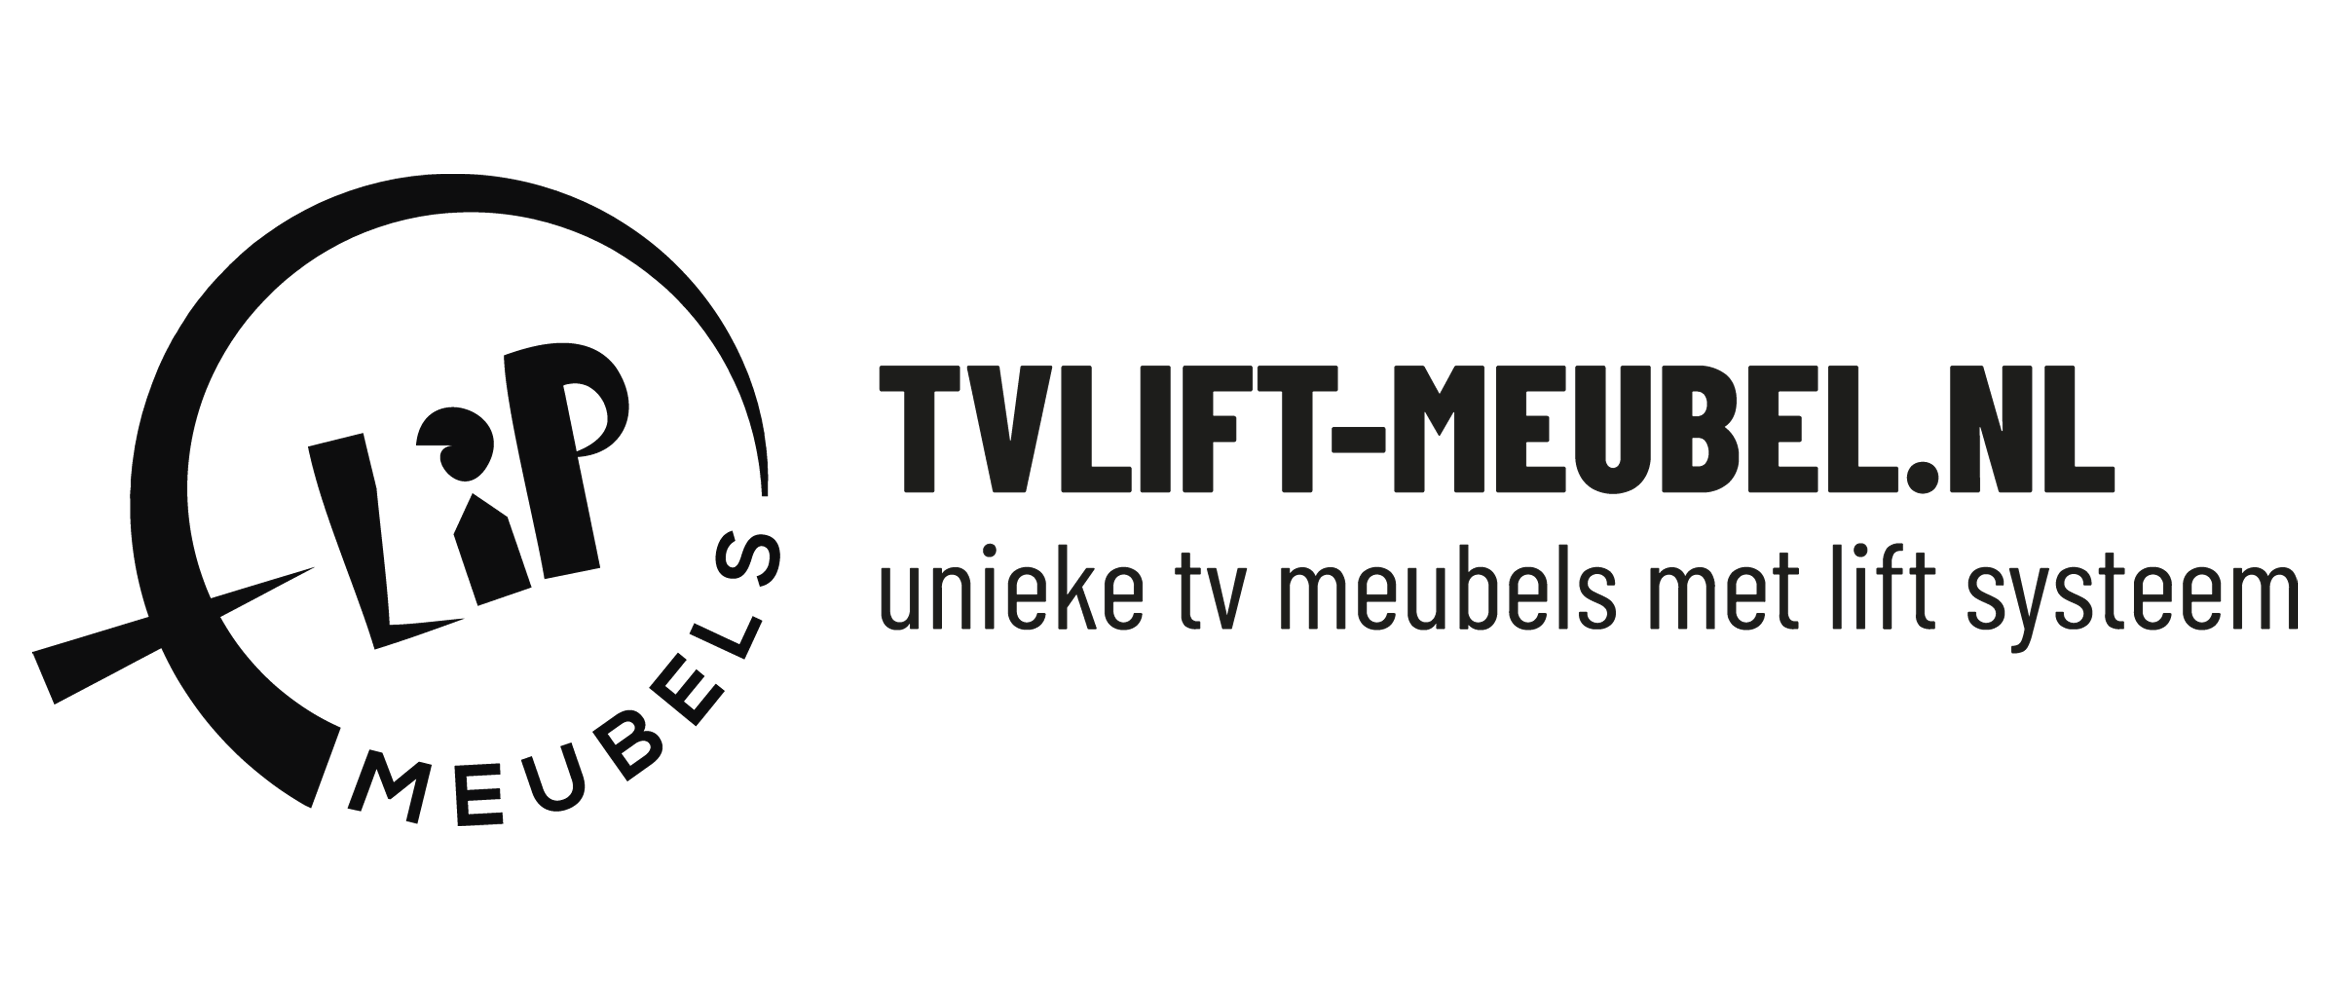 Tvlift-meubel.nl